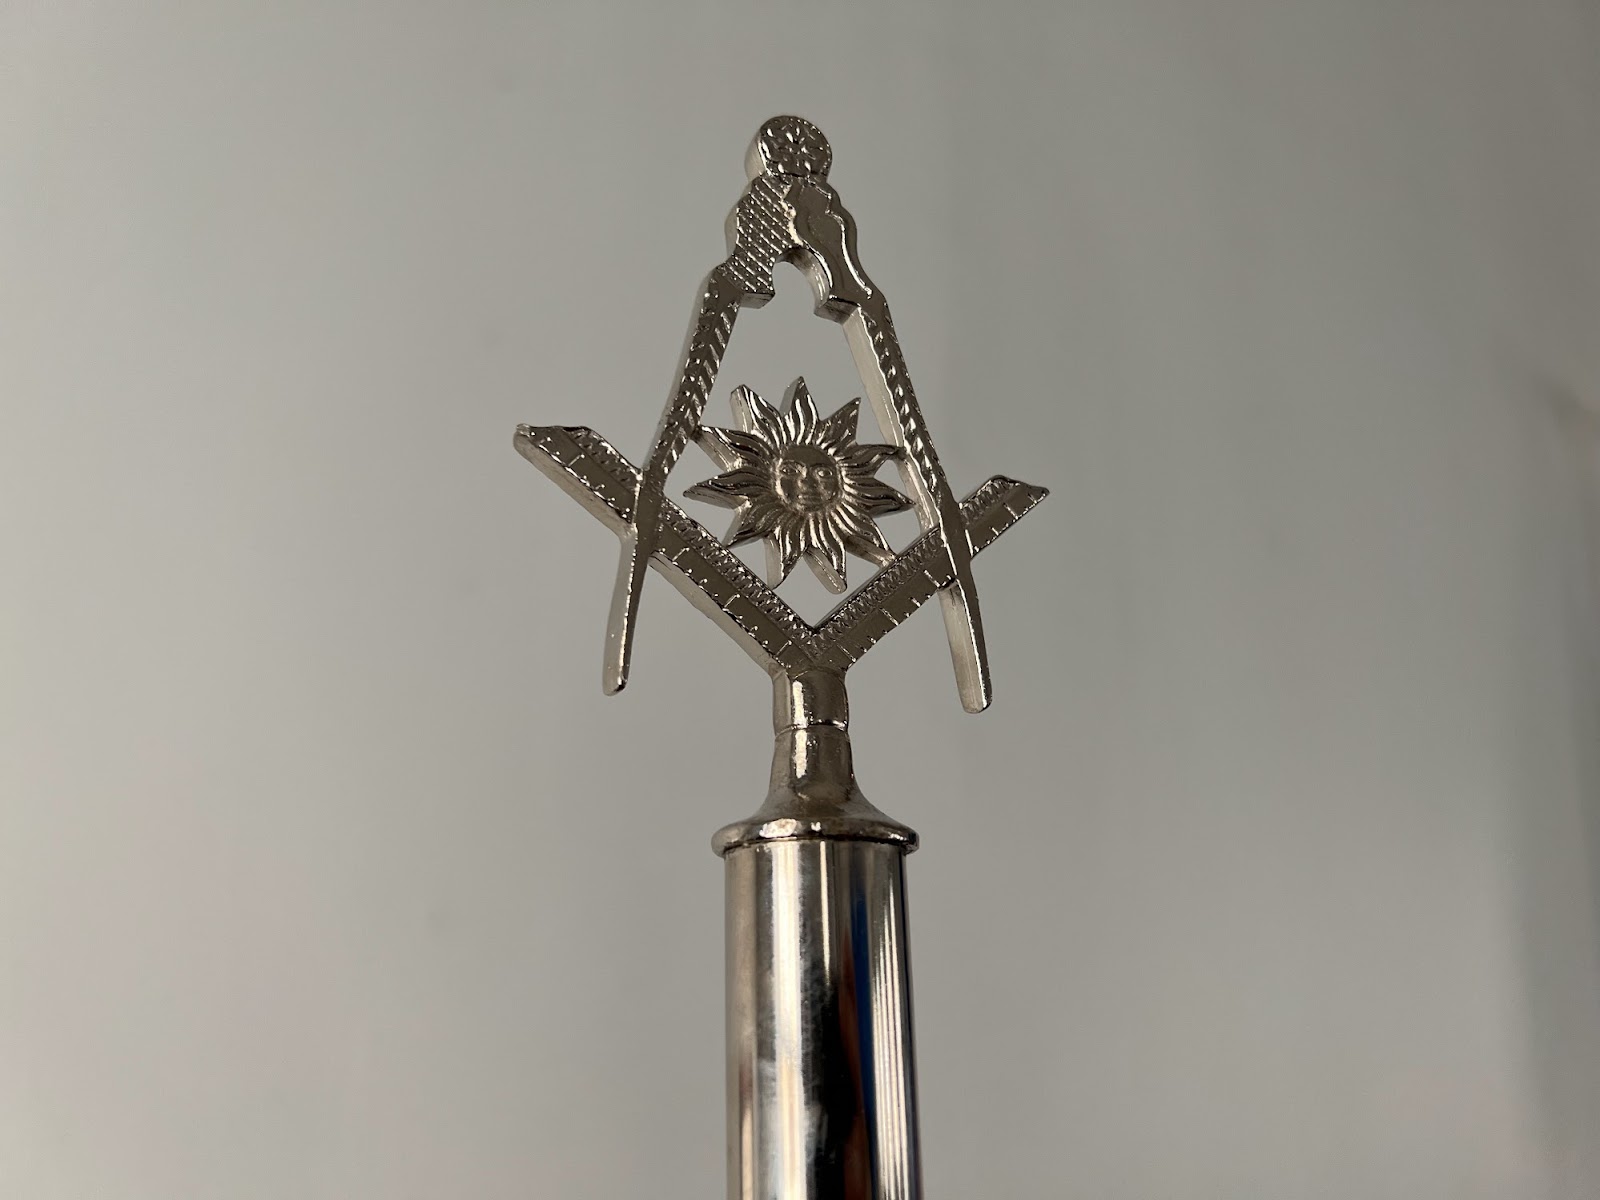 Masonic symbol from a Masonic Lodge